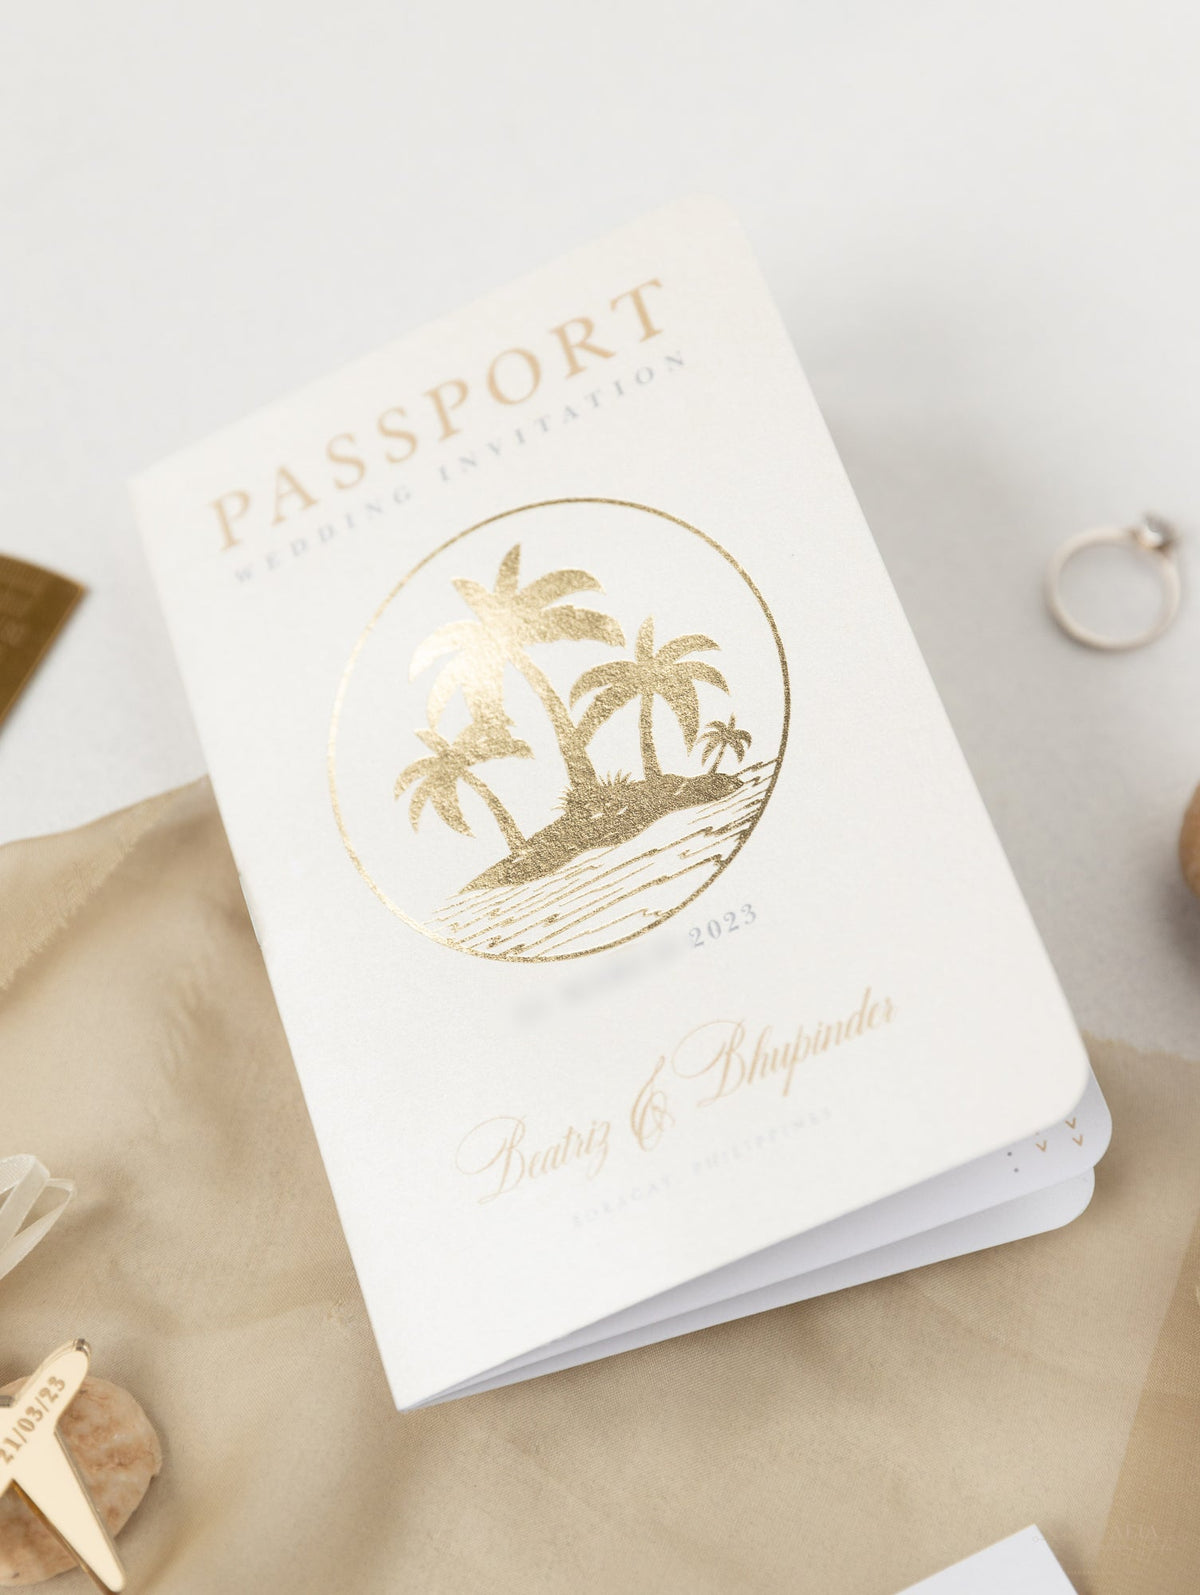 Invito a nozze con passaporto color nudo e oro - Aereo inciso di lusso in plexi dorato, invito a forma di palma